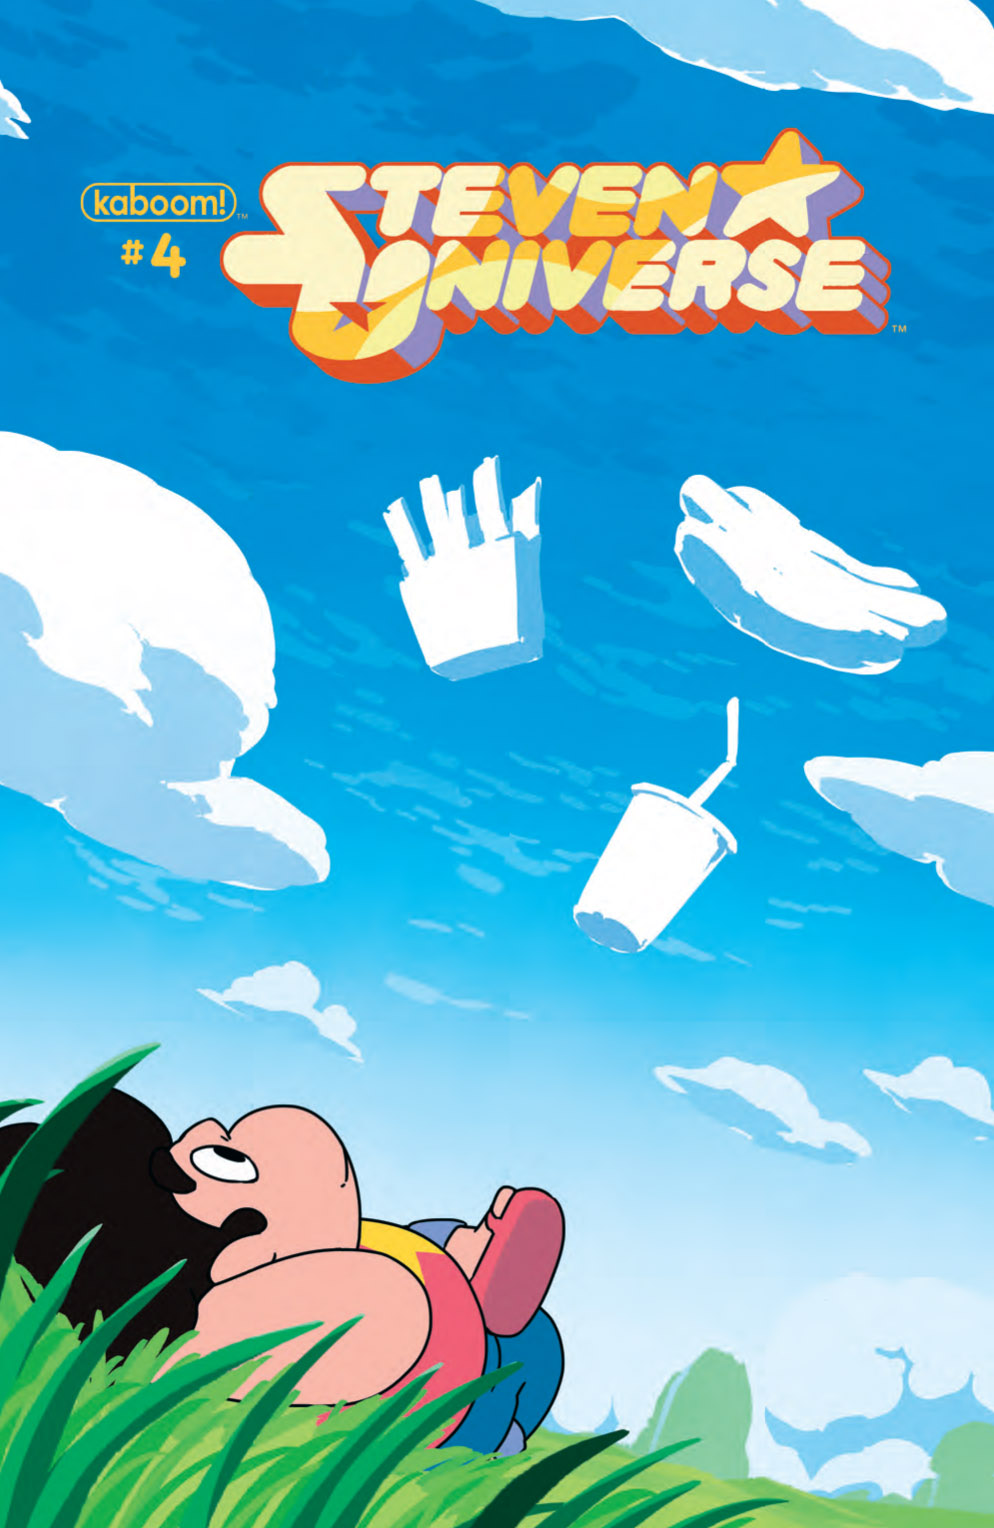 Exclusive Pre Steven Universe 13th Dimension Ics